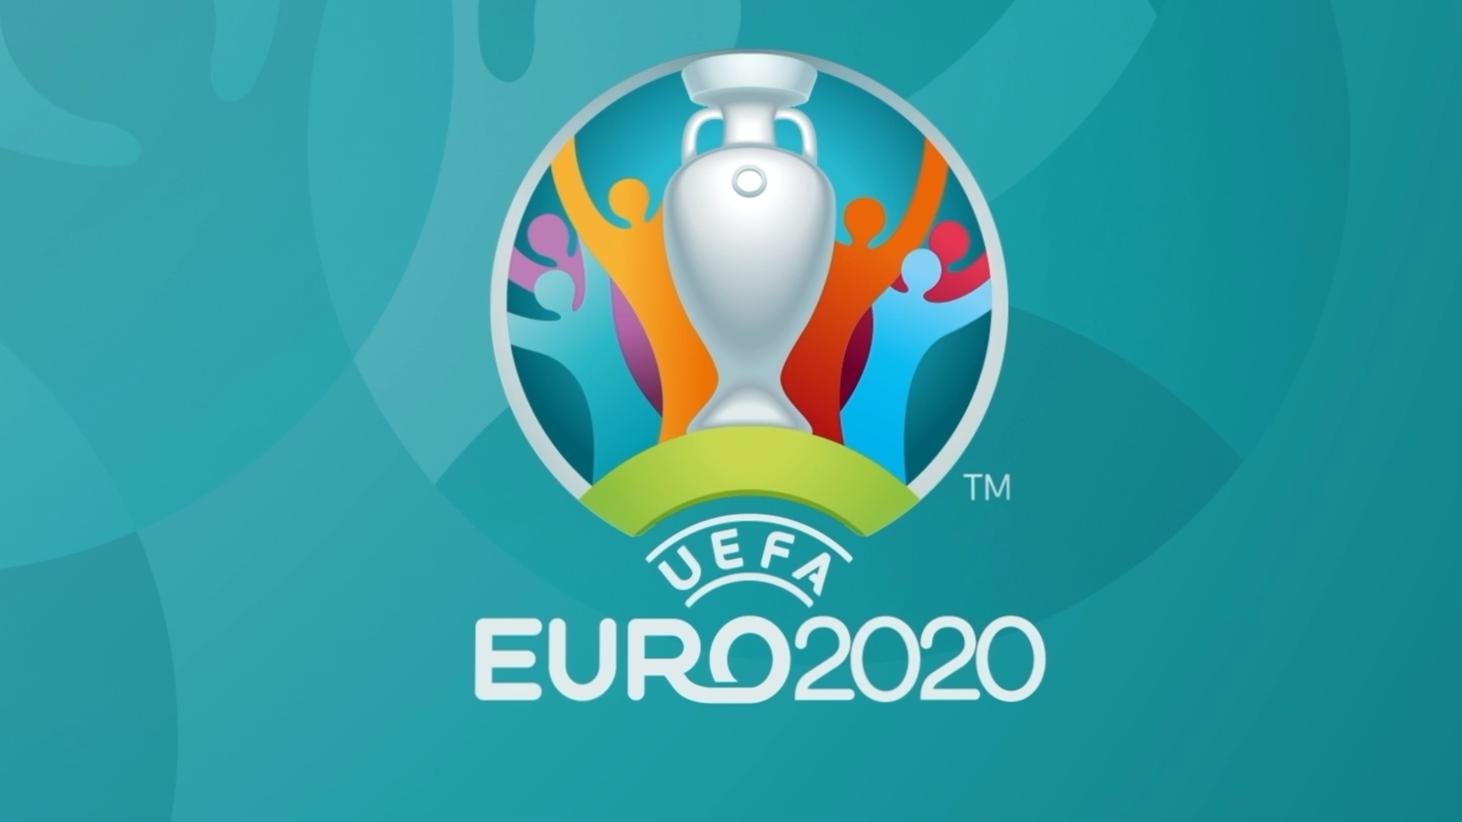 Fodbold-EM 2020 streames i Viaplays basispakke kræver sportspakken - FlatpanelsDK